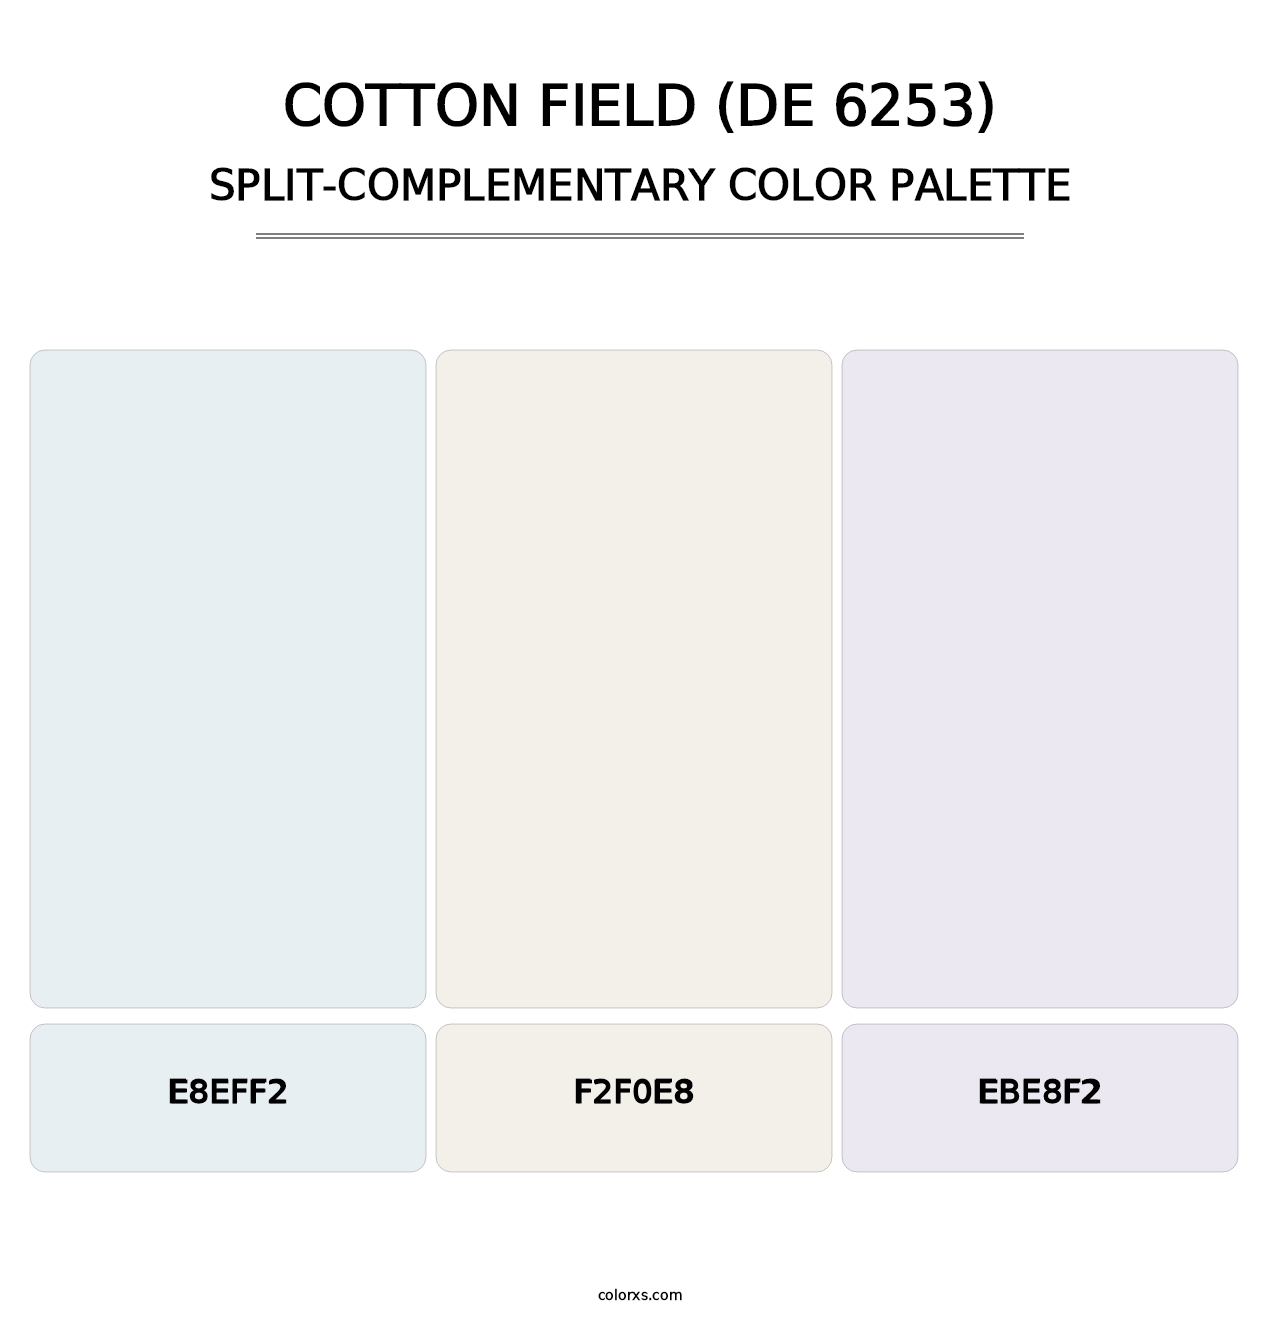 Cotton Field (DE 6253) - Split-Complementary Color Palette